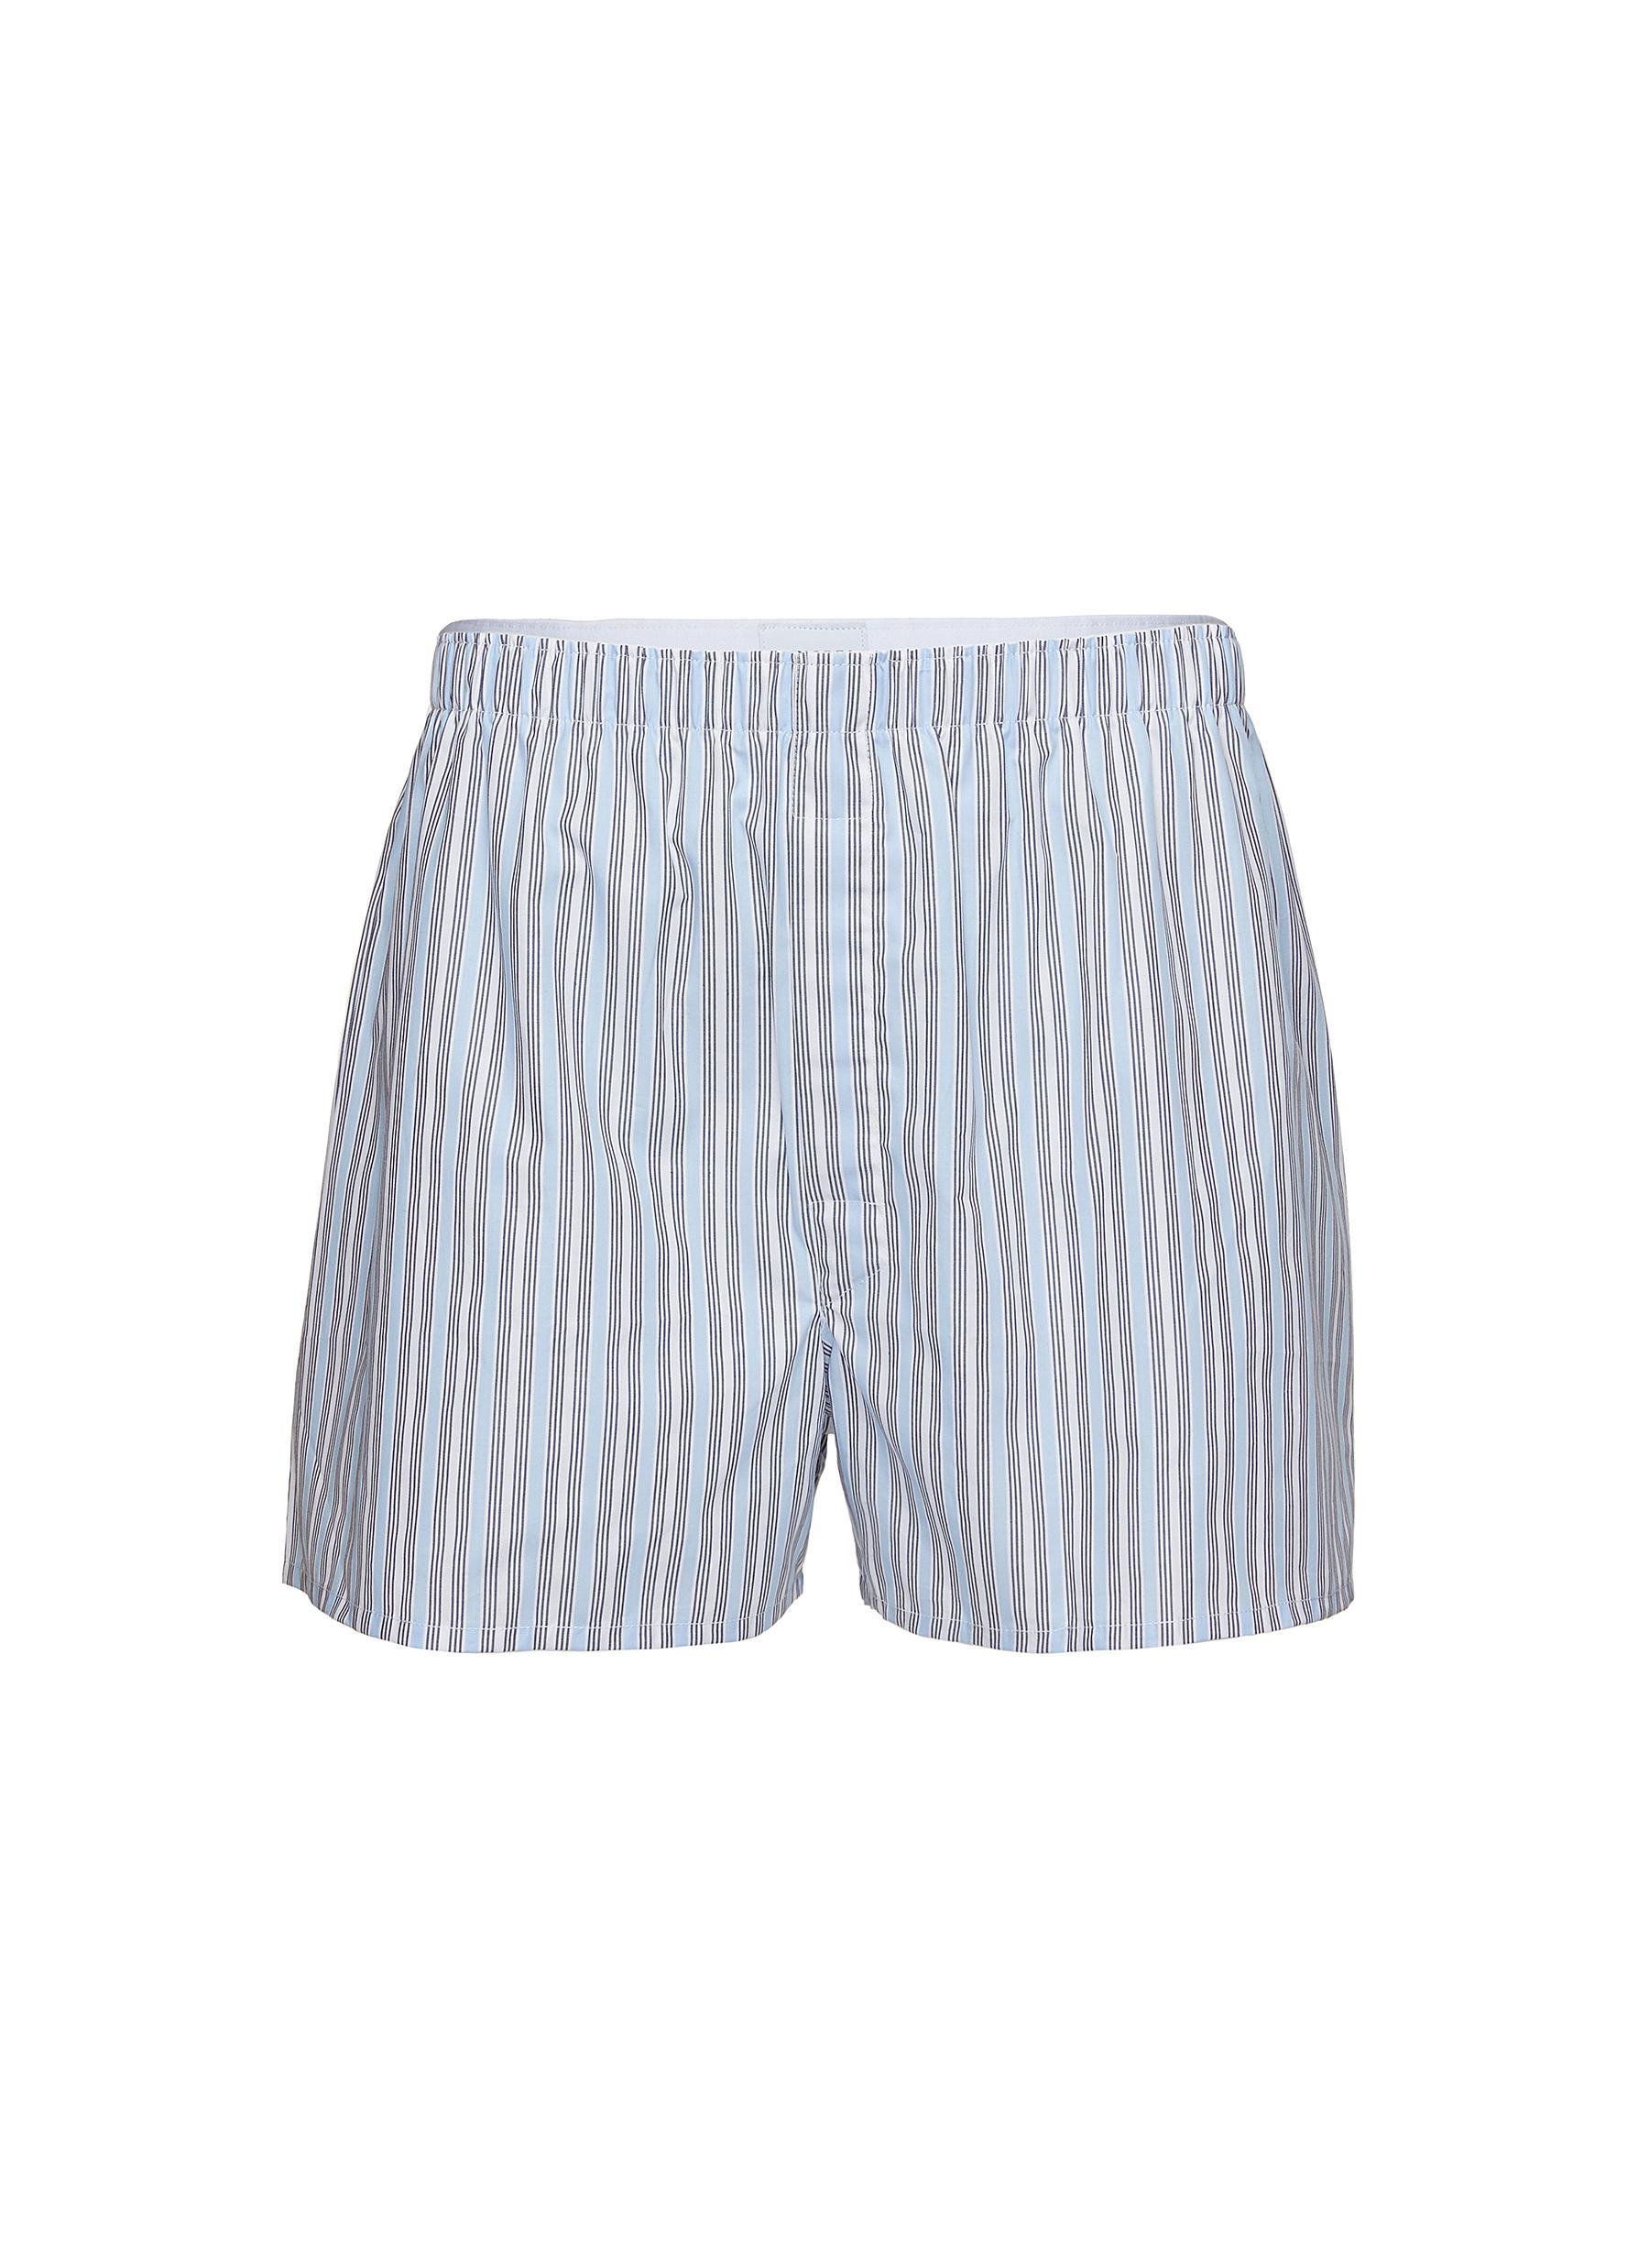 Mix Colour Stripe Cotton Boxer Shorts